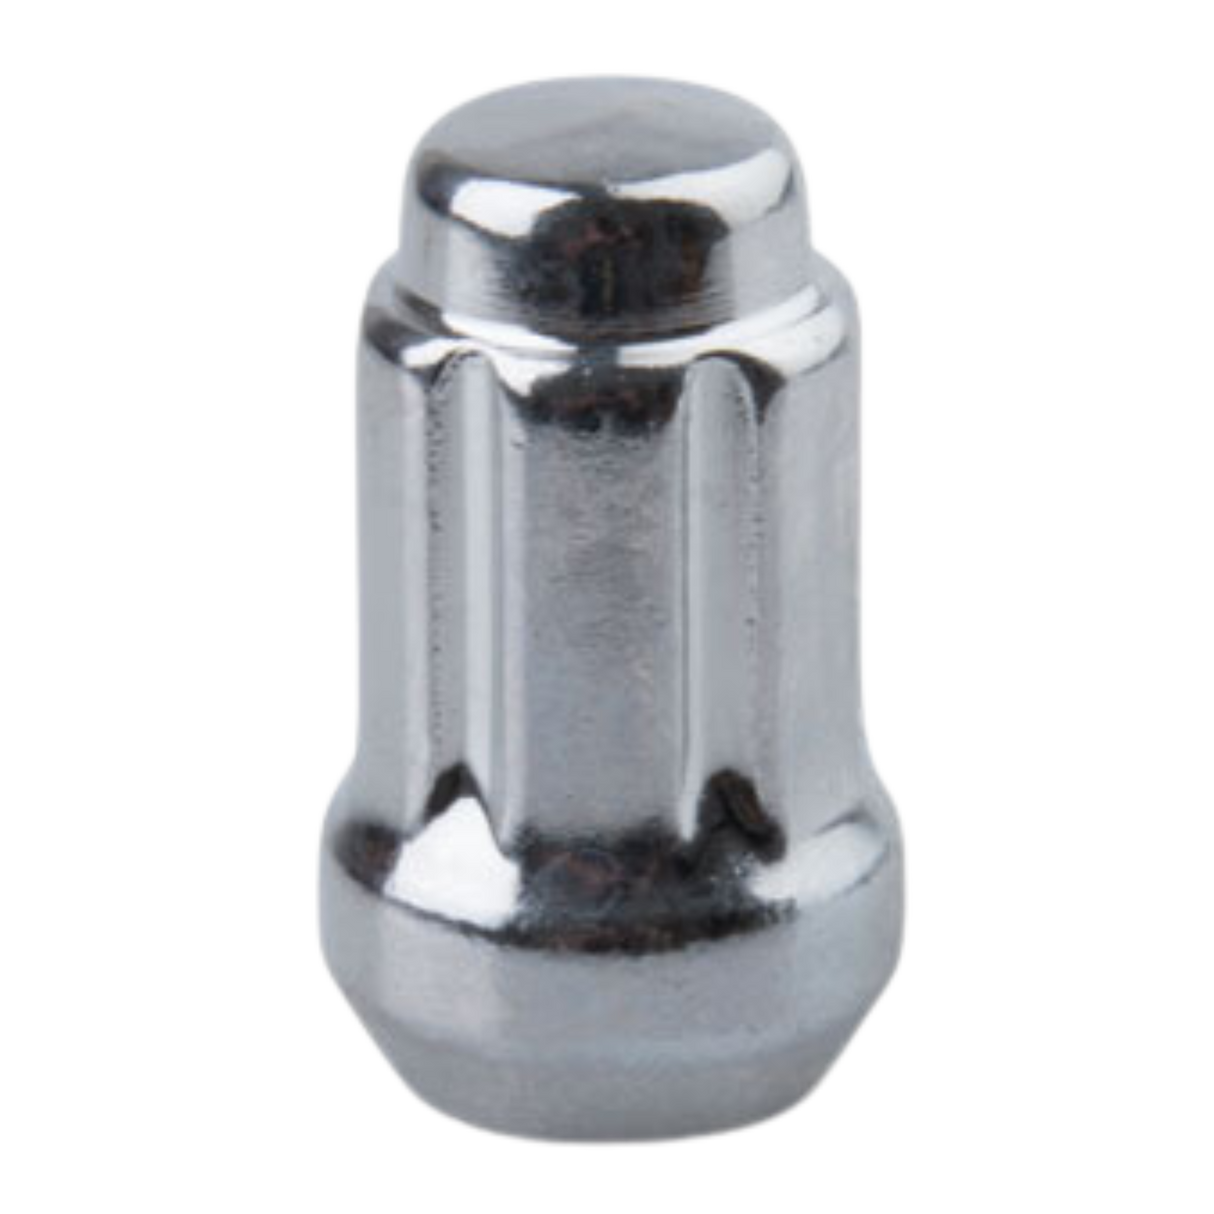 Tapered Spline Drive Lug Nut 12mm x 1.50mm Thread Pitch